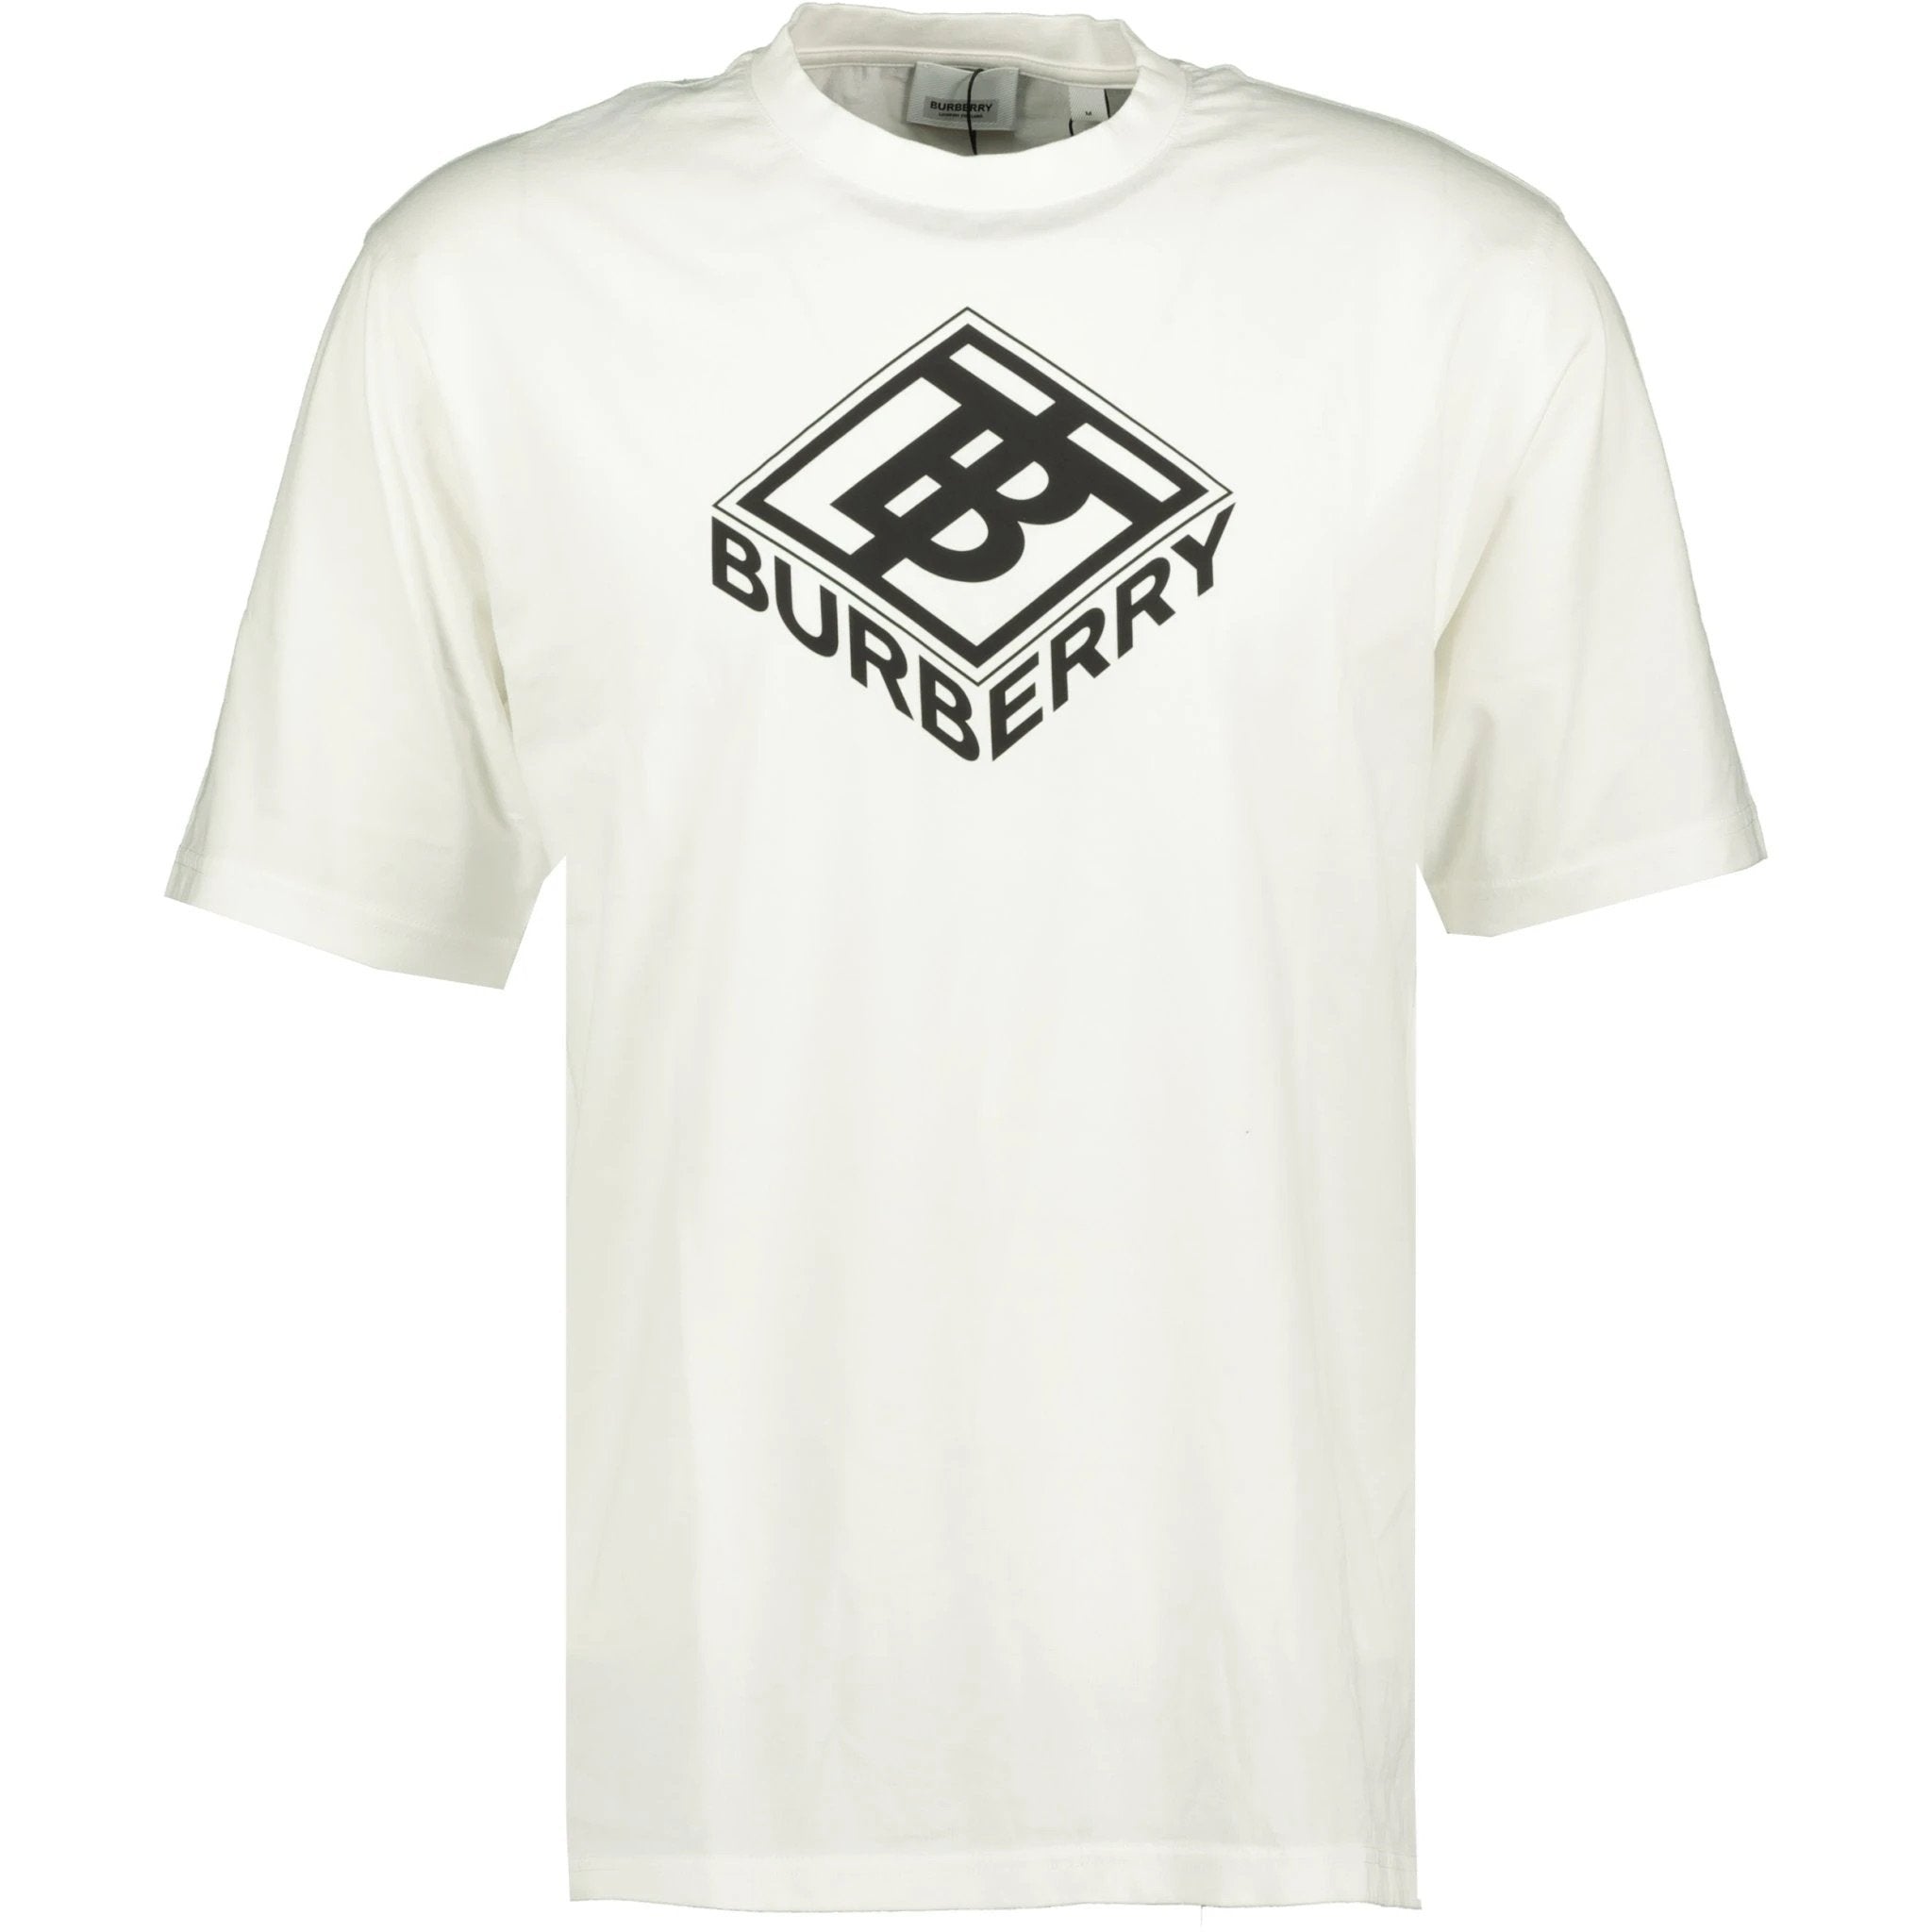 Burberry Graphic Logo Print T-Shirt White | chancefashionco